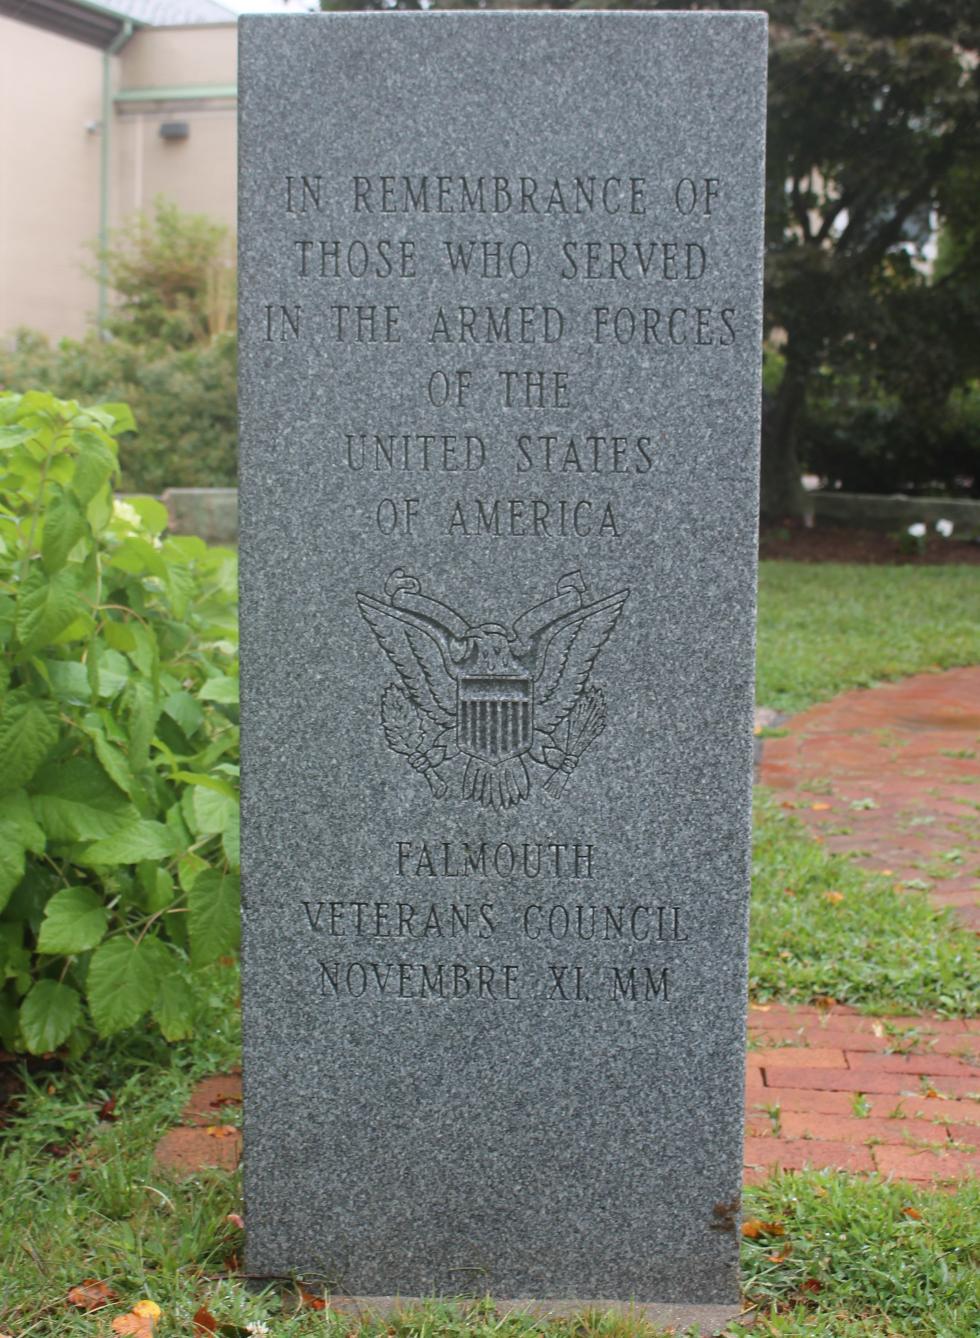 Falmouth Veterans Council Veterans Memorial